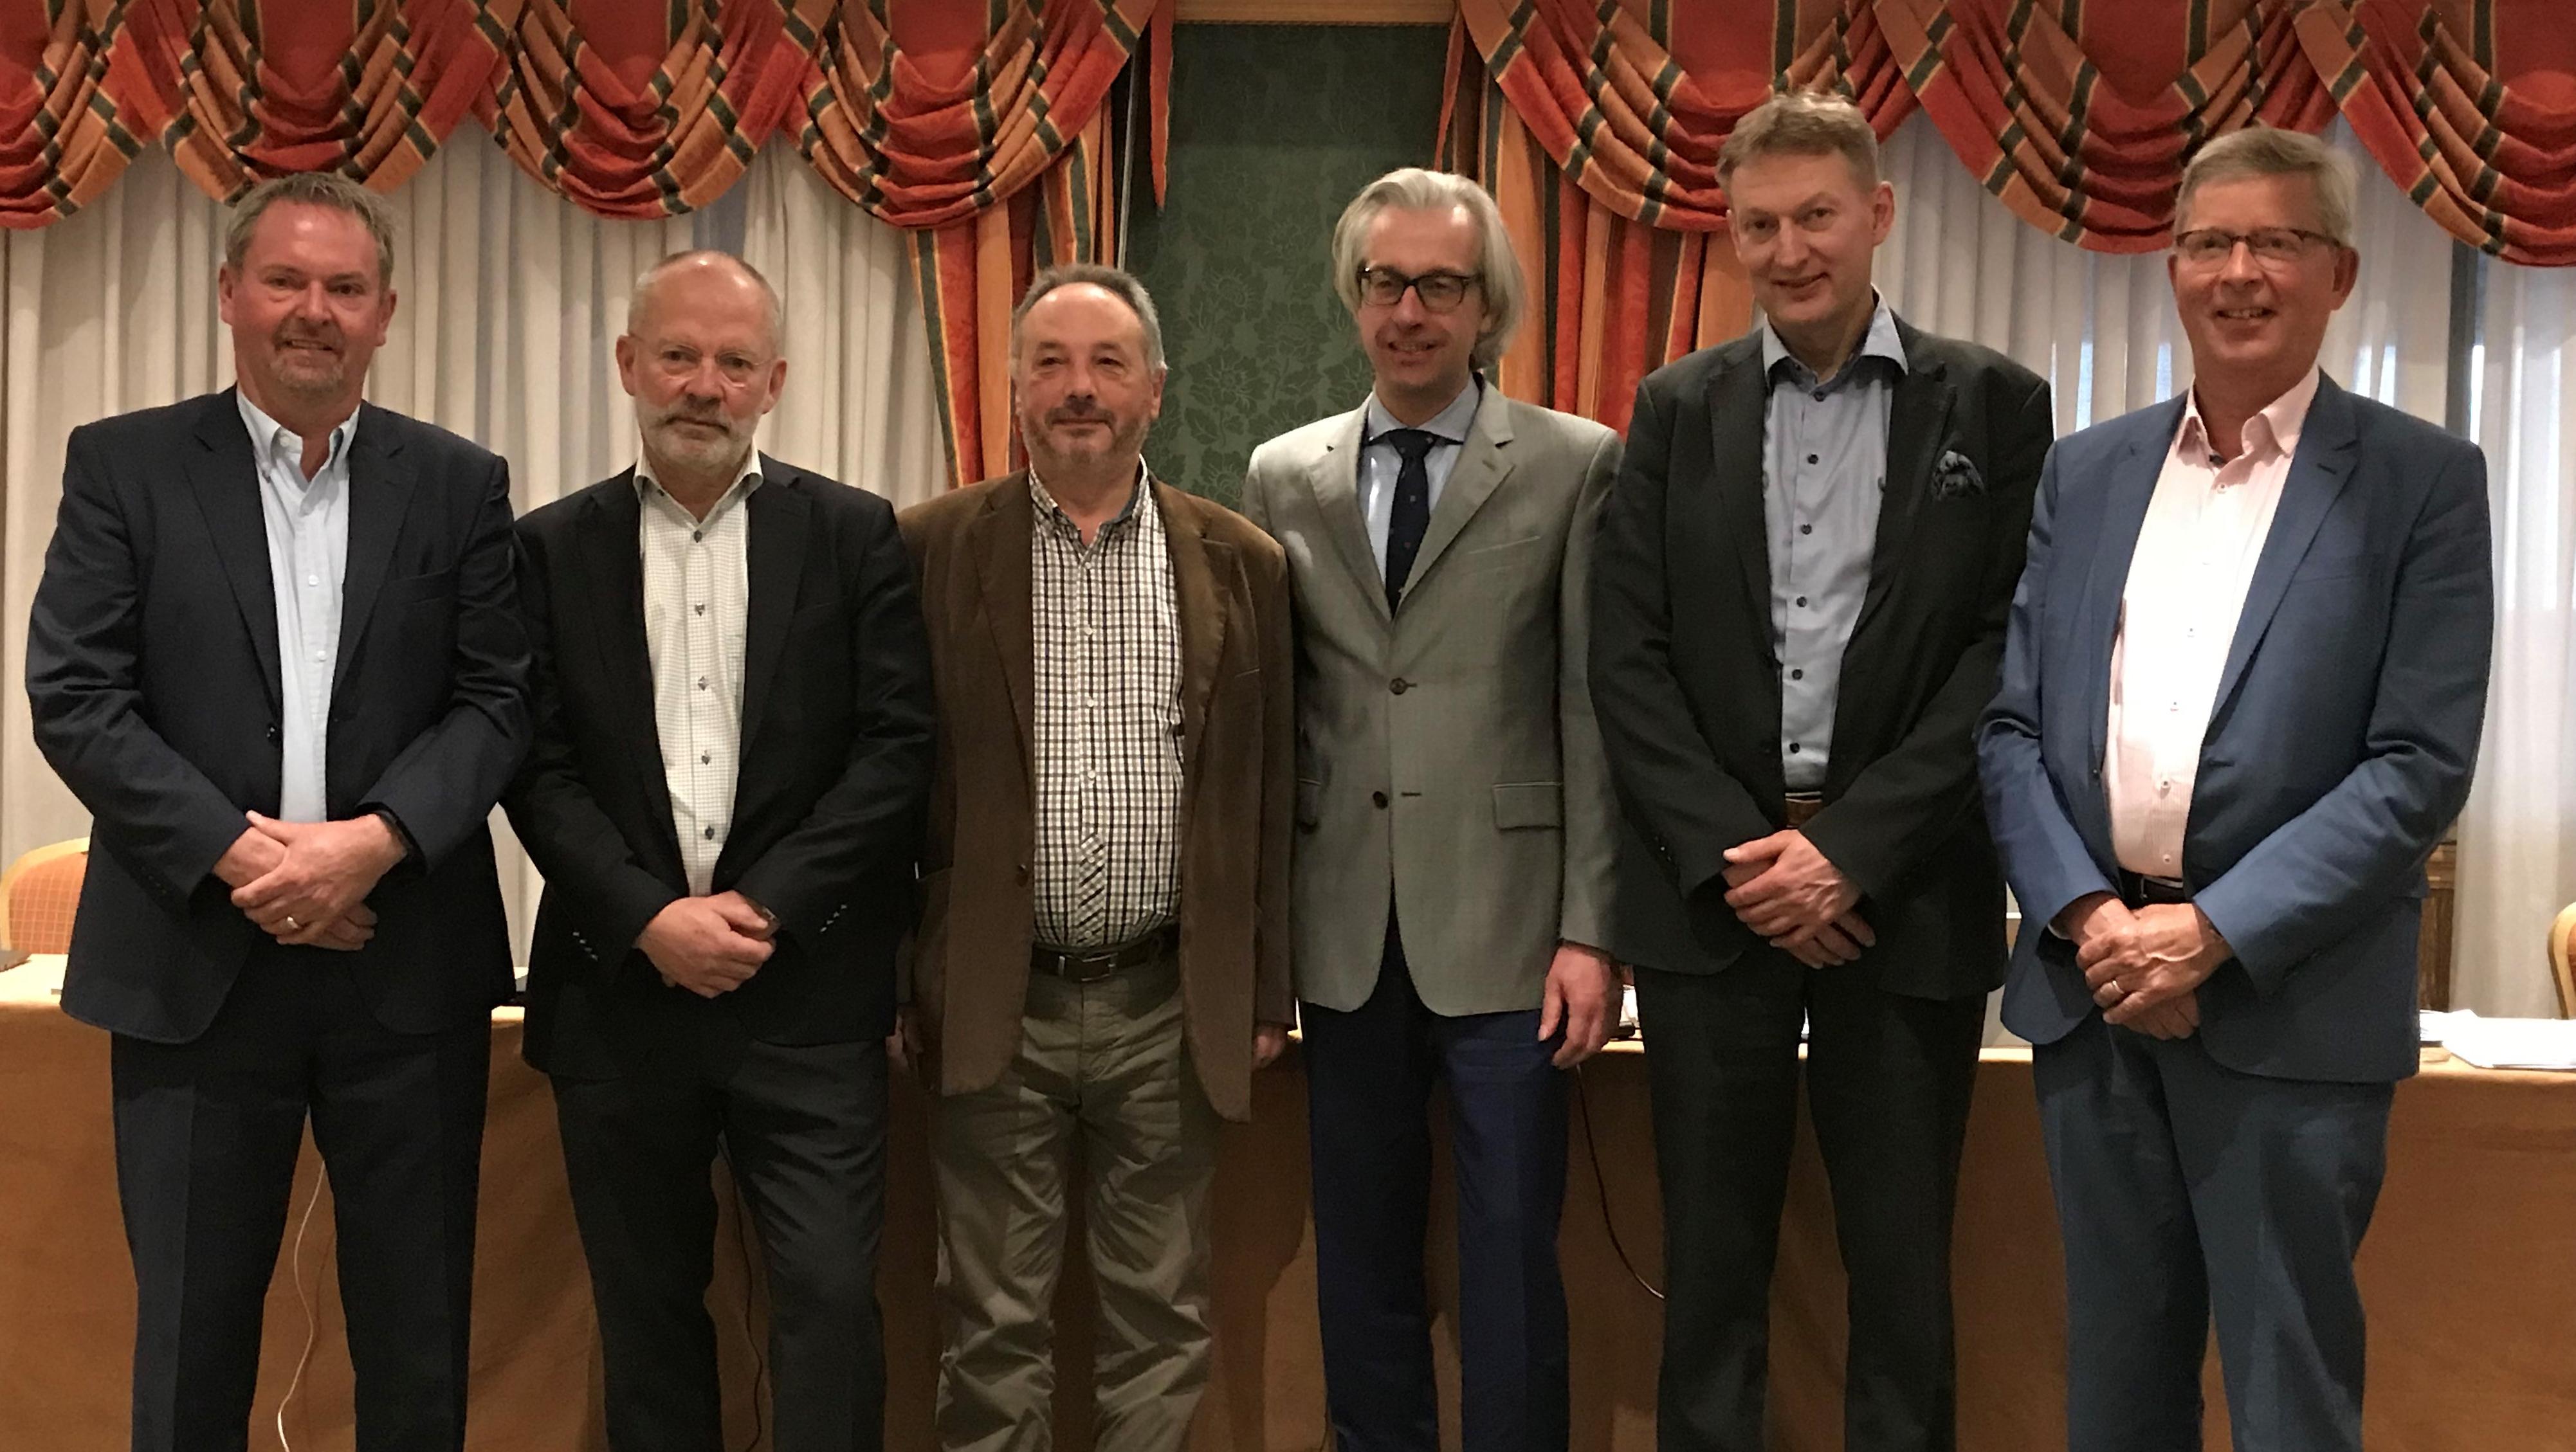 De leden van het directiecomité van ETIM International Eric Piers, Sverker Skoglund, Ryszard D’Antoni, Hans Henning, Magnus Siren en Jan Janse.